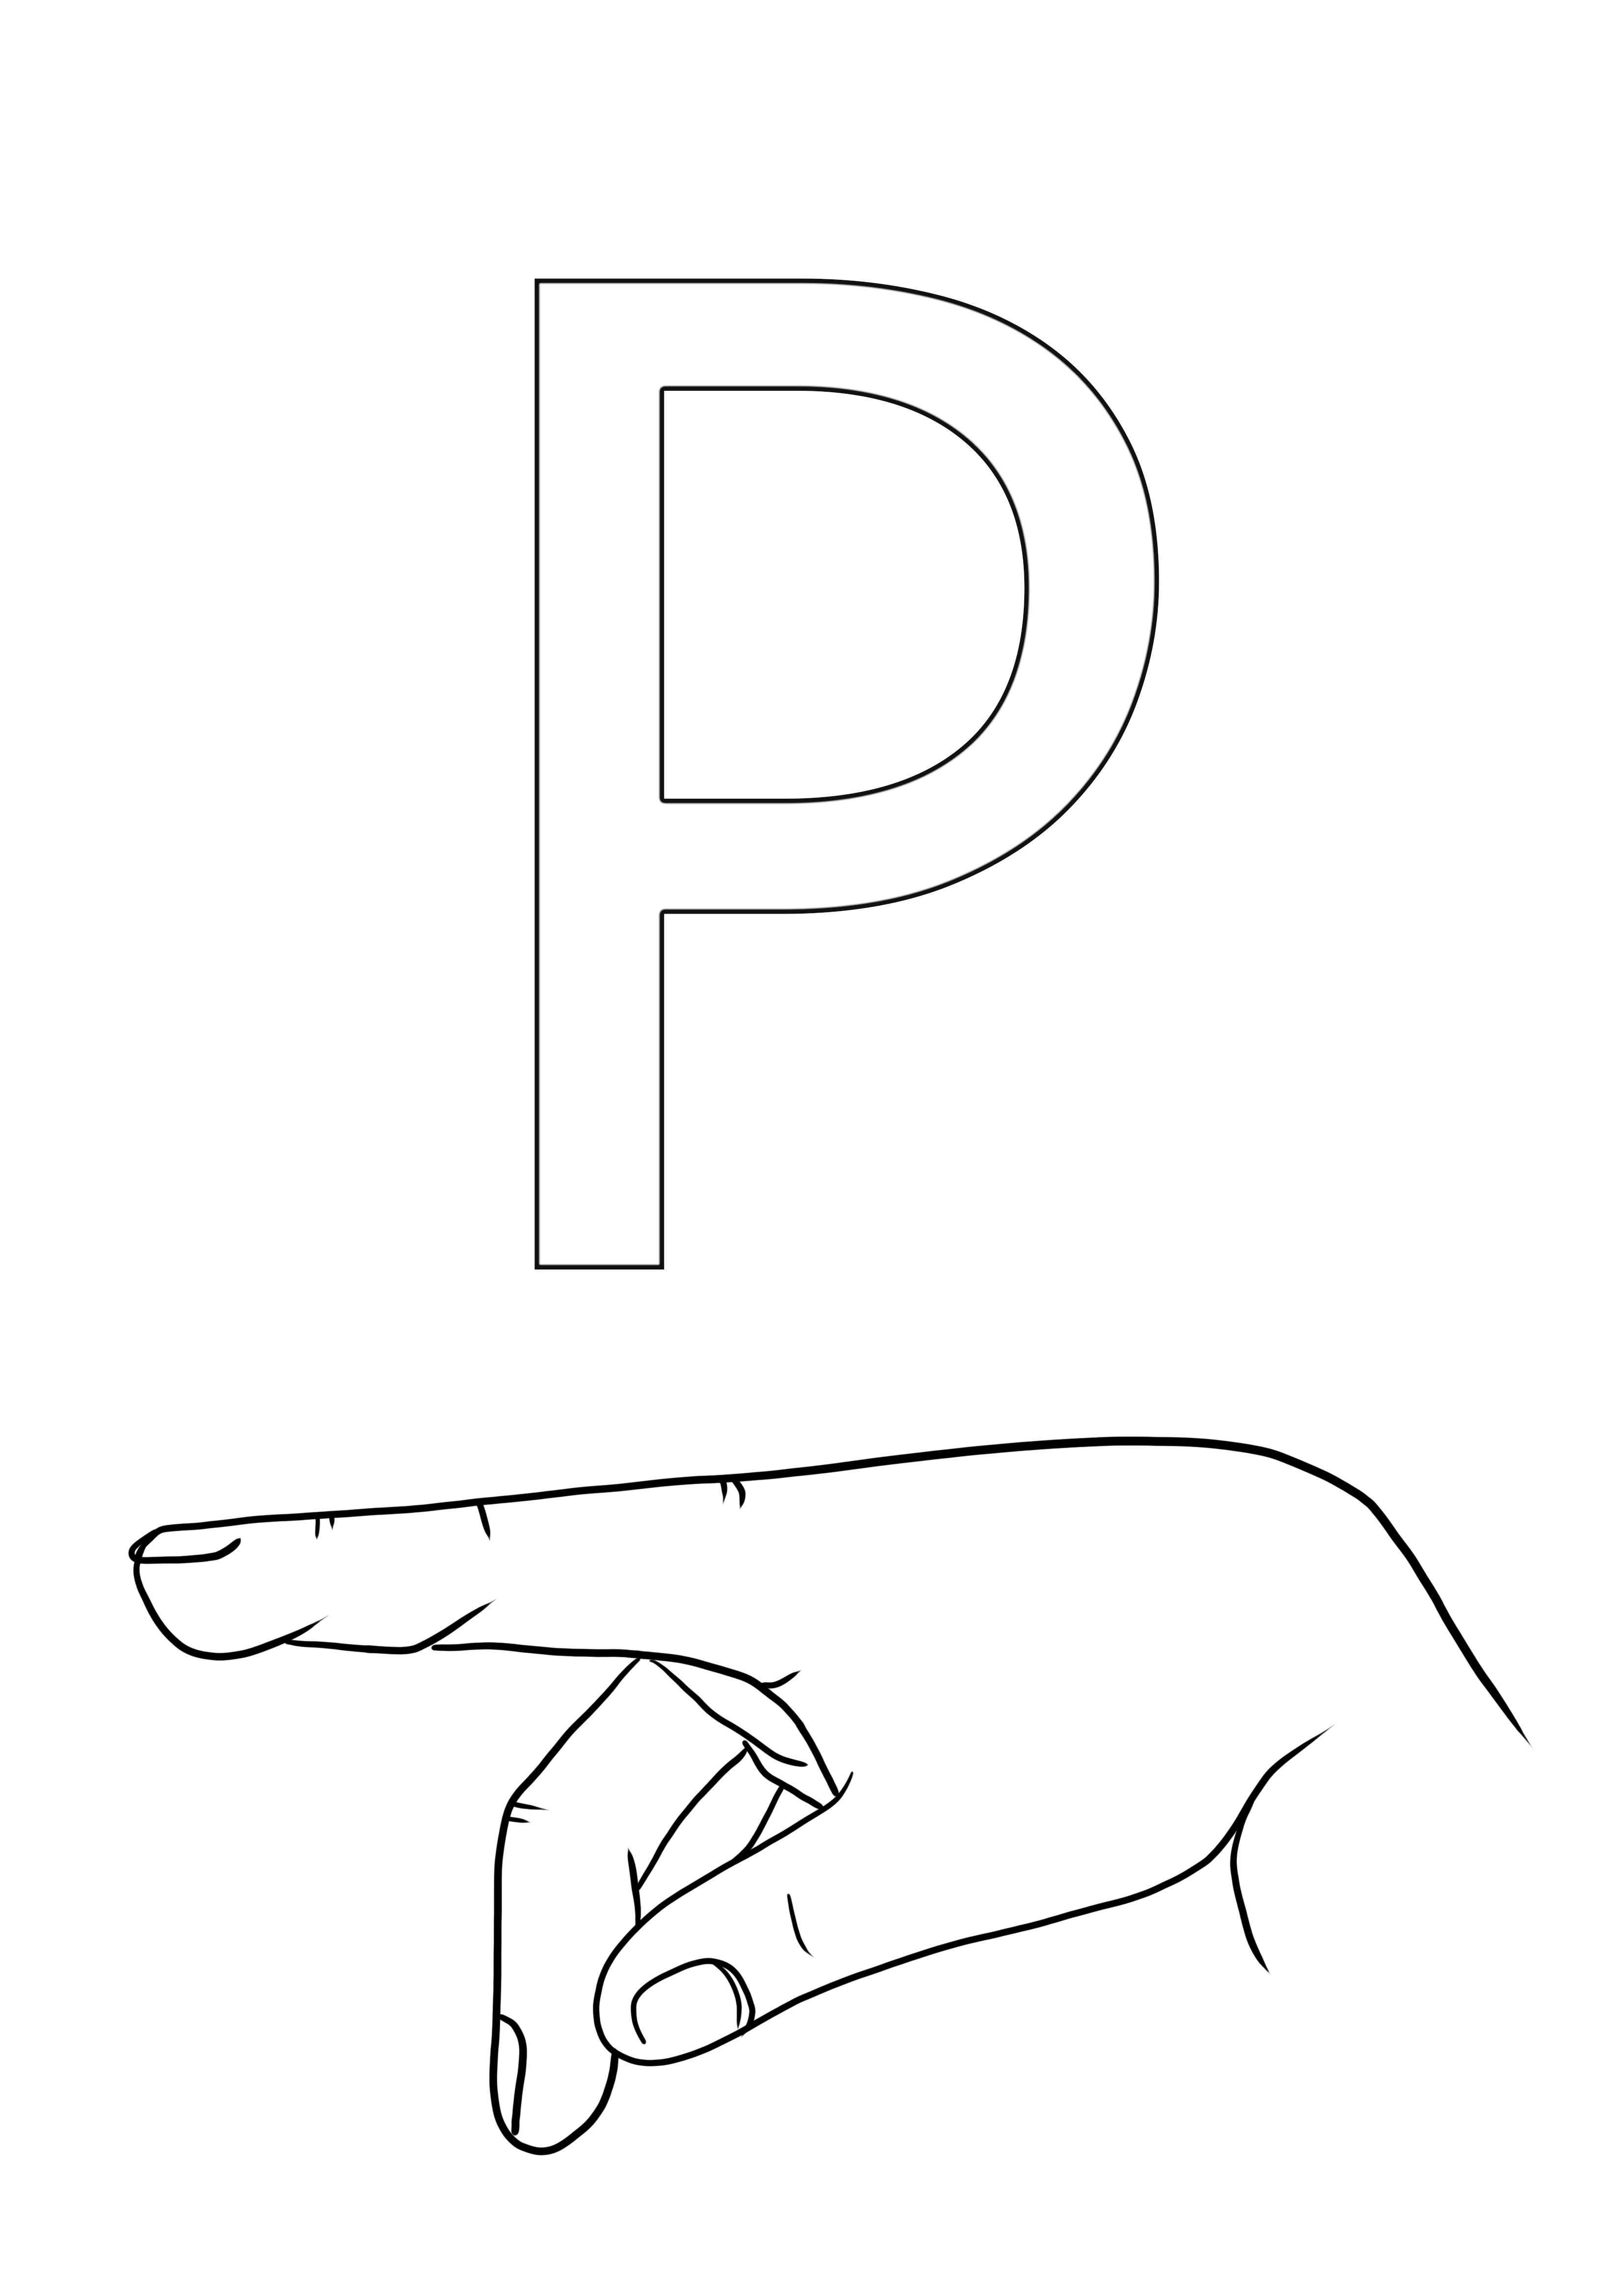 ASL P harfini ücretsiz renklendirin ve yazdırın